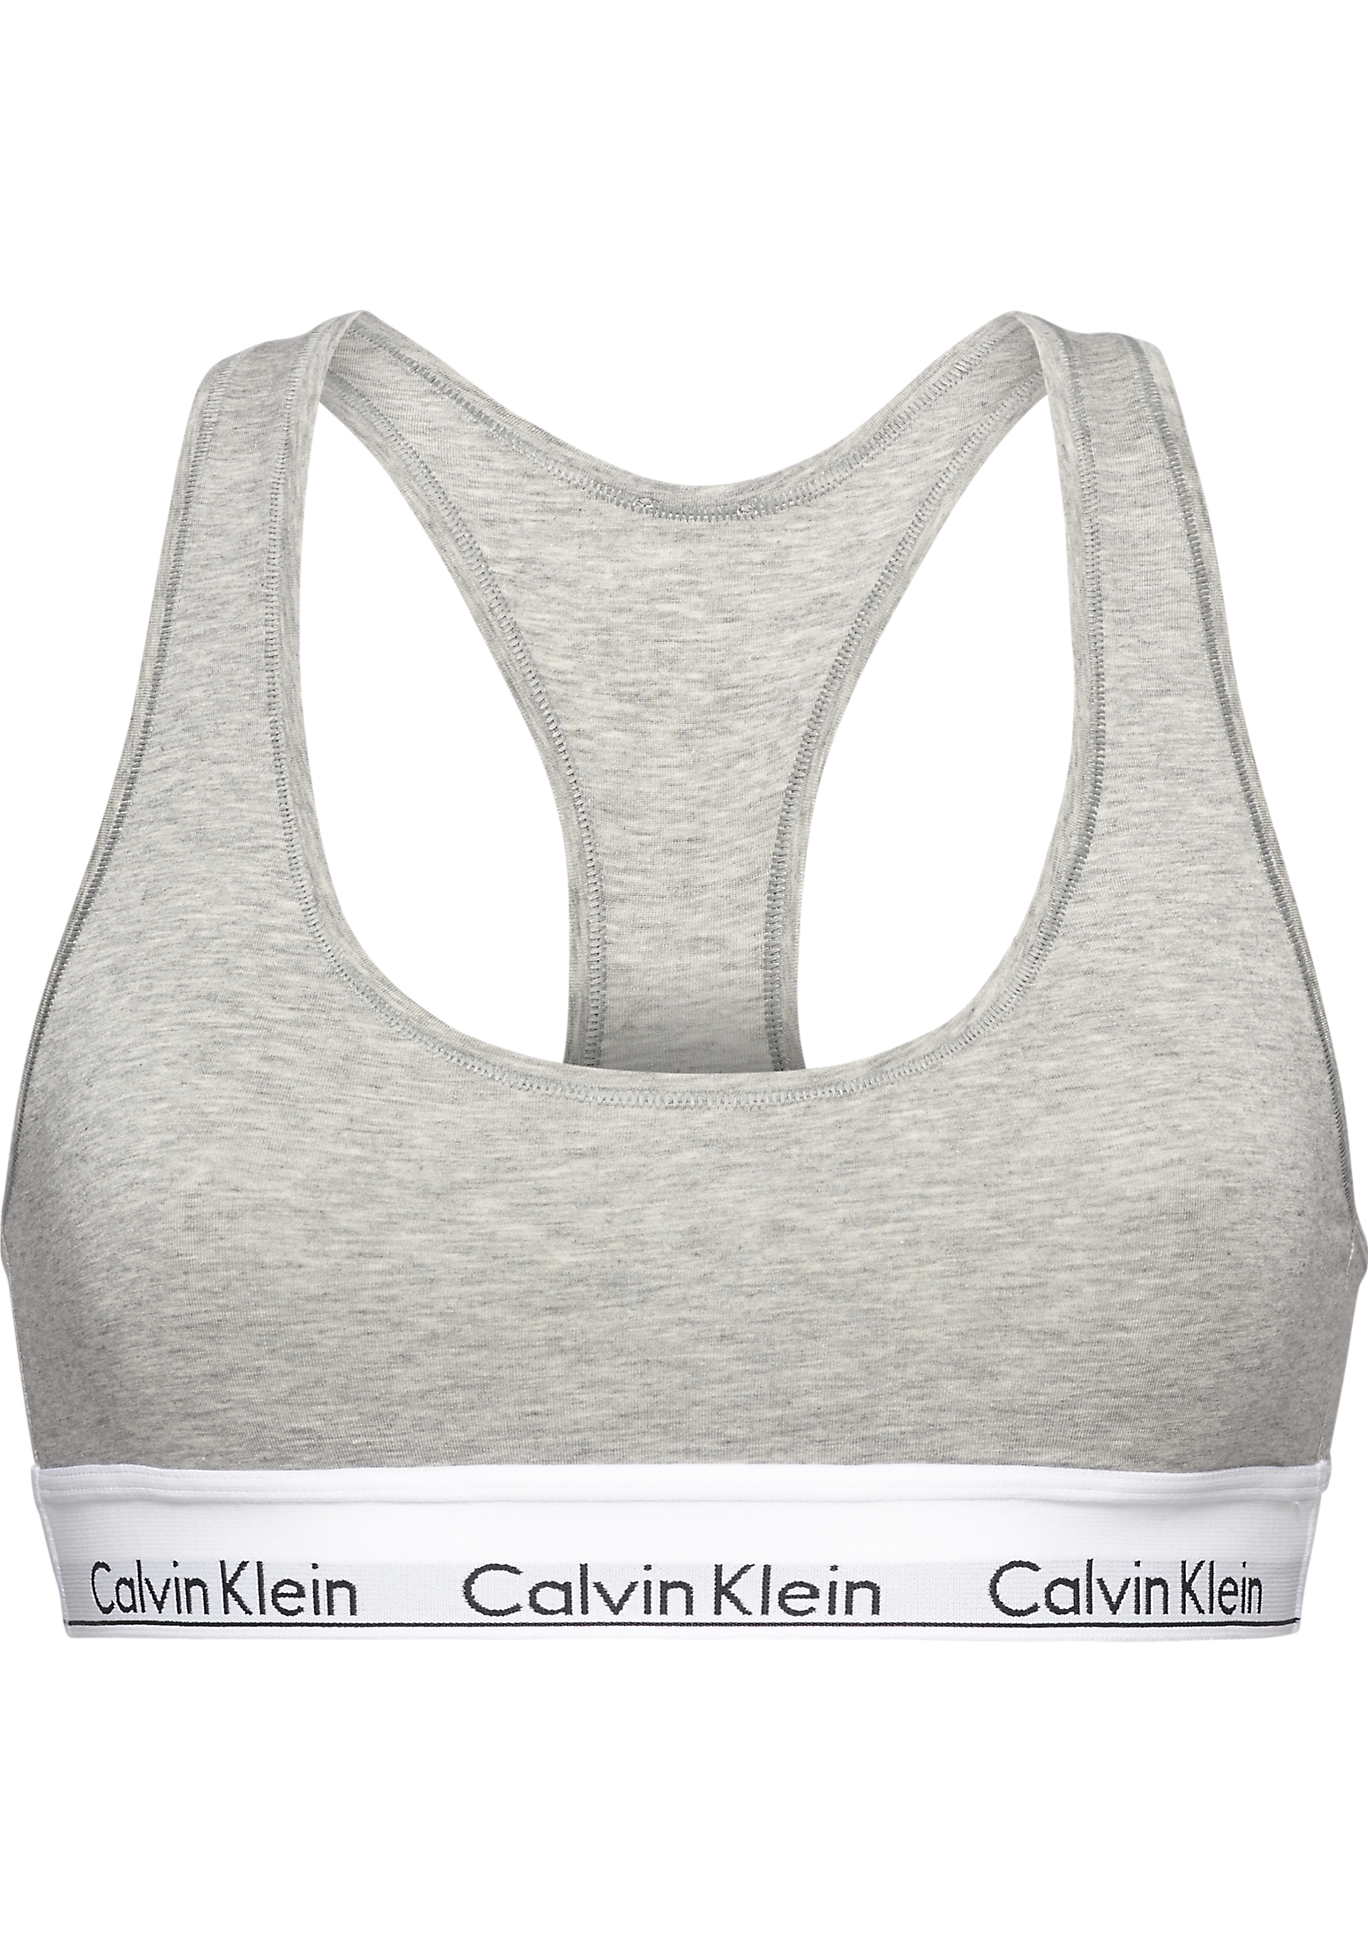 isolatie leeg gedragen Calvin Klein dames Modern Cotton bralette top, ongevoerd, grijs - SALE tot  50% korting - Gratis verzending en retour